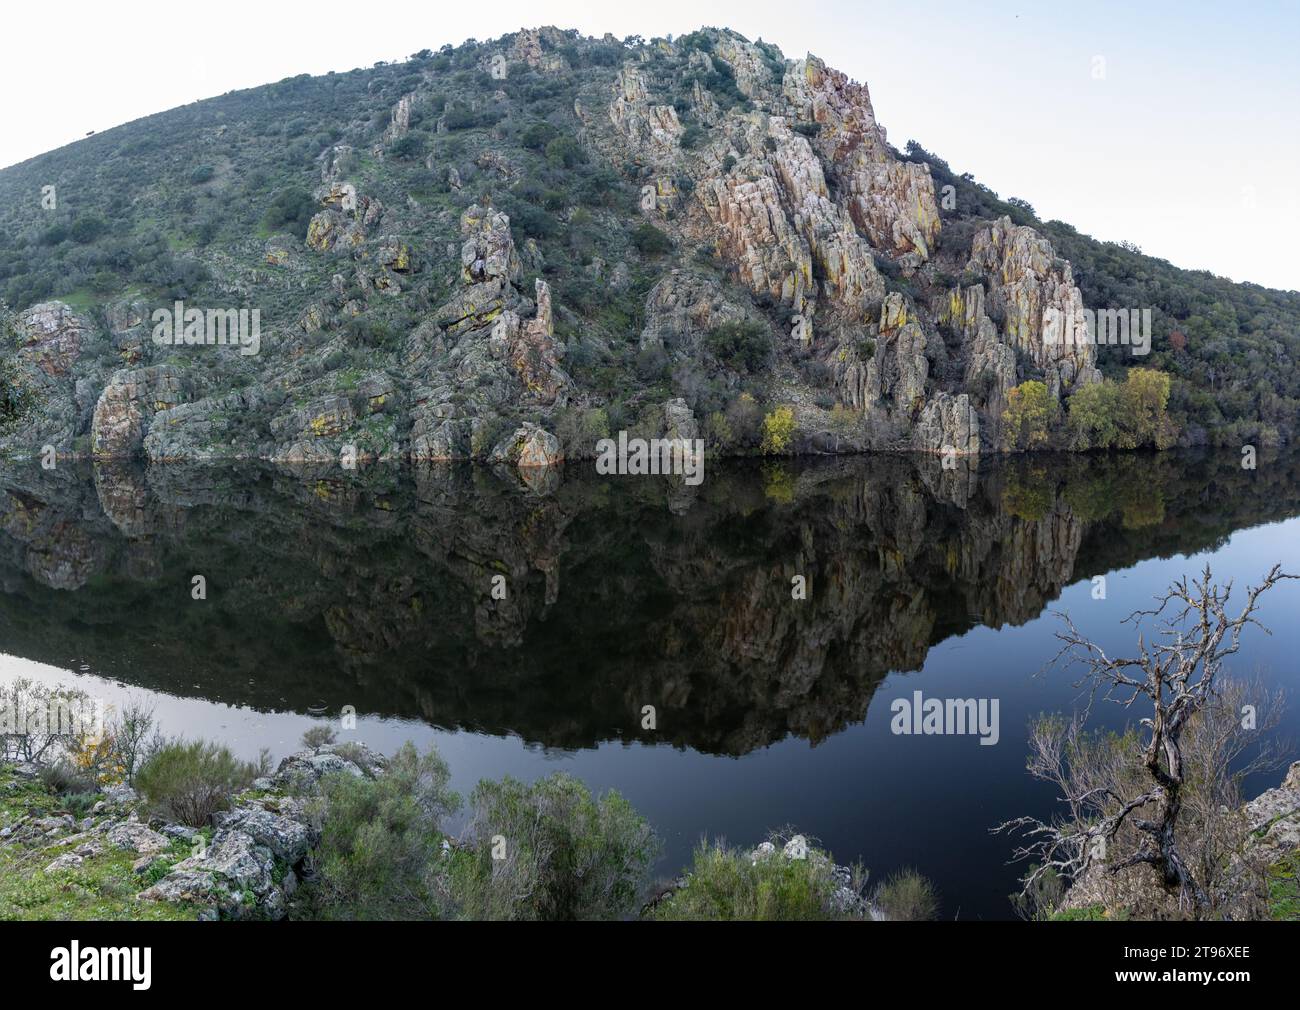 Parque Nacional de Monfragüe, tranquilidad en estas impresionantes rocas con sus reflejos en el agua del Río Tajo, Cáceres, España Banque D'Images